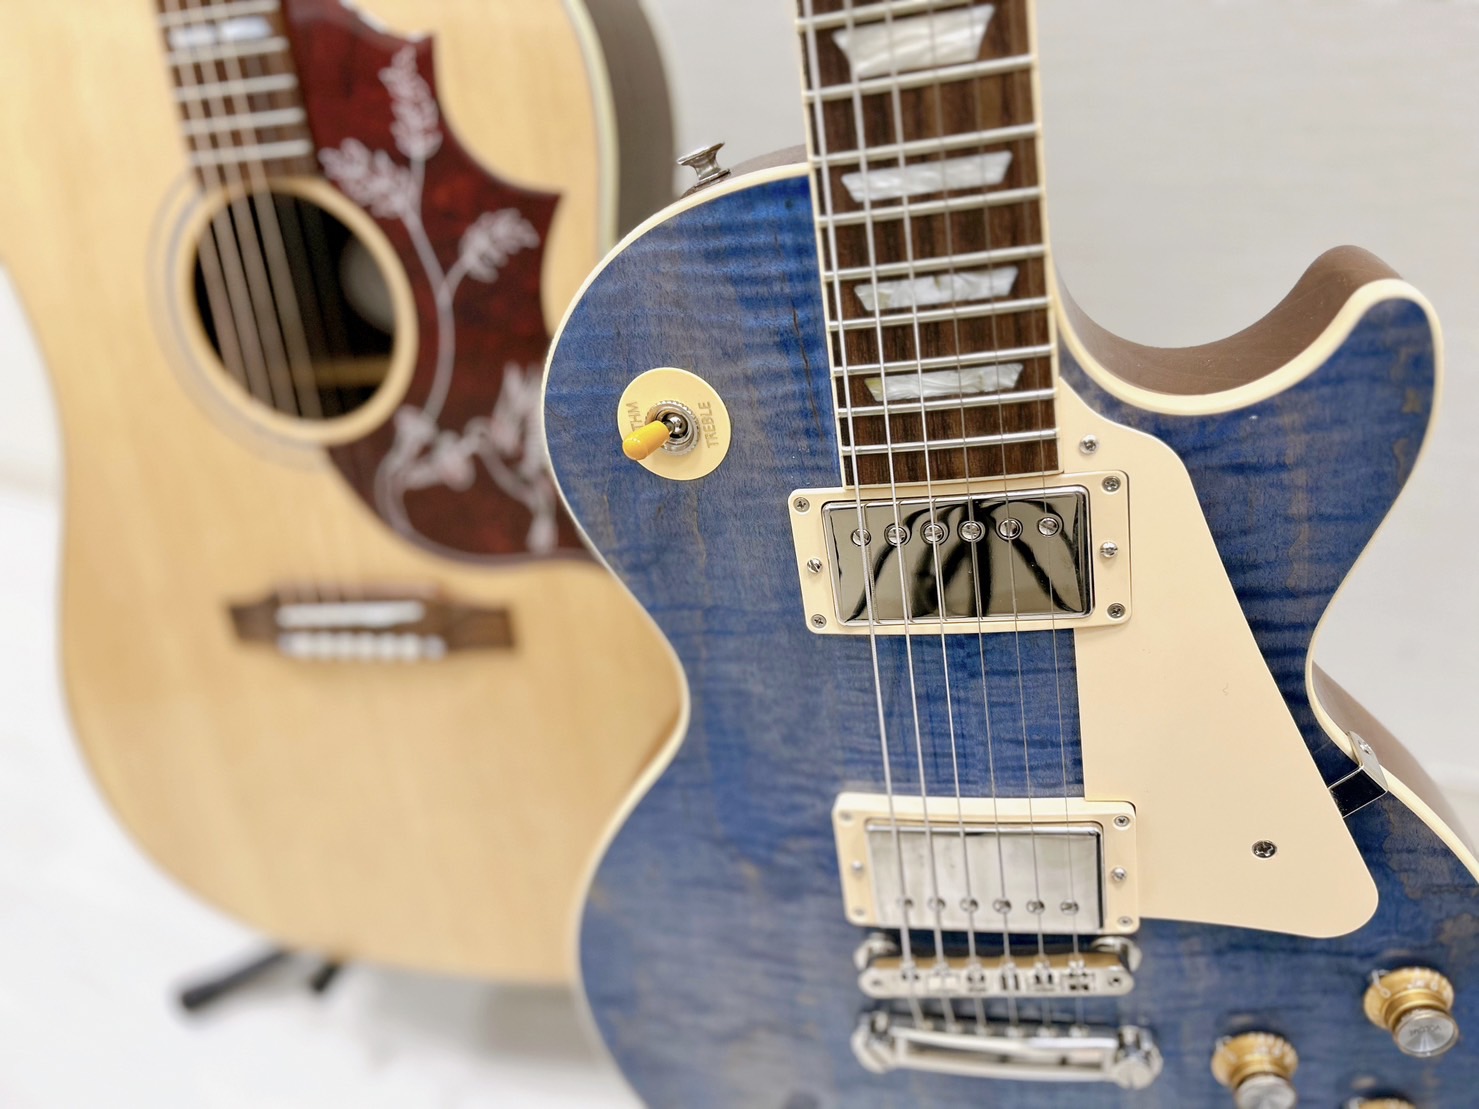 島村楽器大分店では、MartinやGibson、Fenderなどの高級ブランドアコースティックギター・エレキギターを販売中です。 こちらでご紹介するギターはすべてブランドメーカーの高級ギターとなっております。店頭では実際にお試しいただけますので、ぜひお気軽にご来店ください！ ※2/19現在の在庫状況 […]